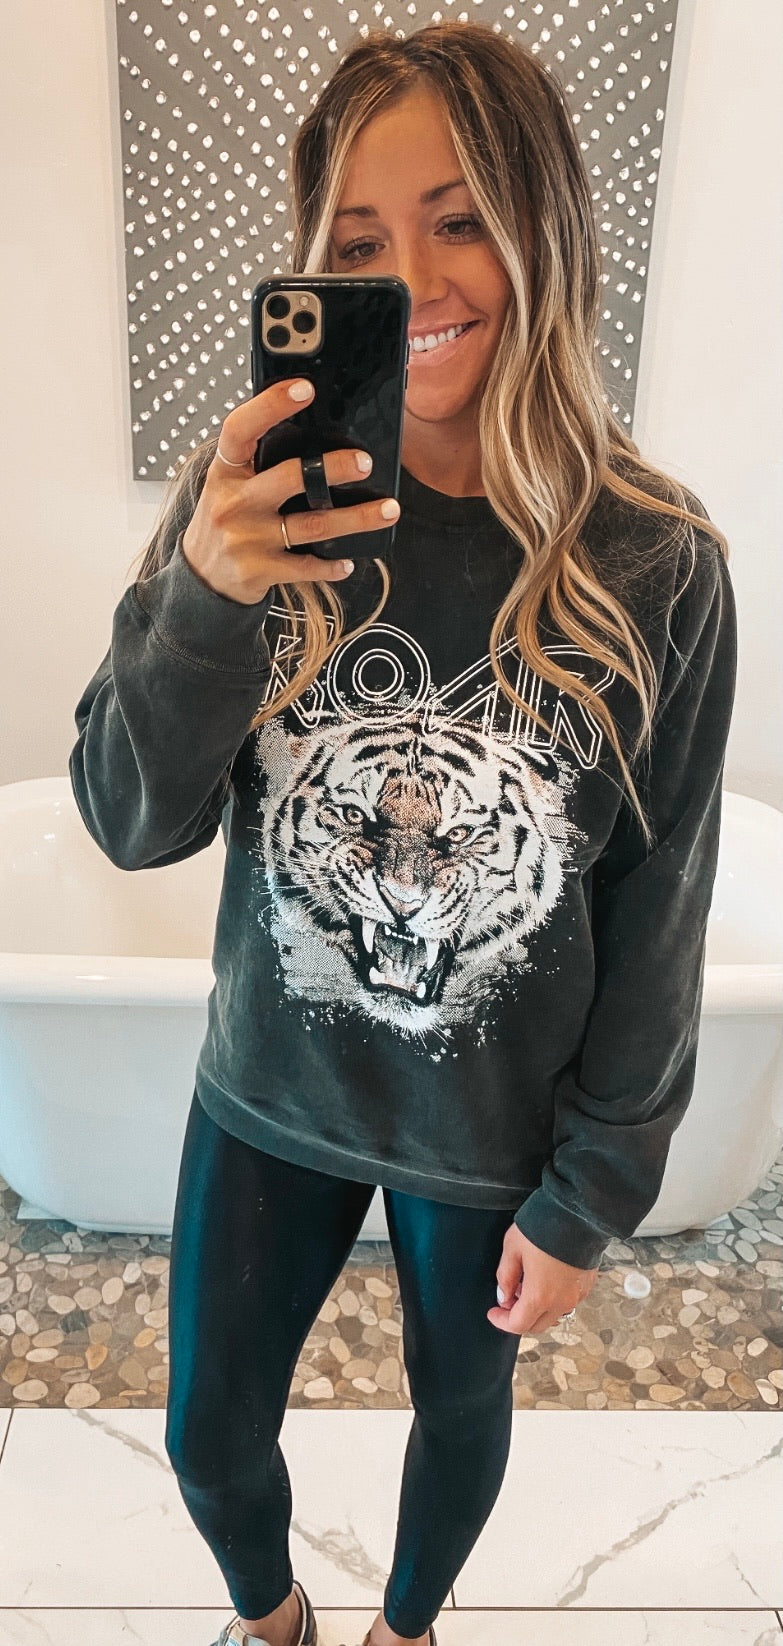 Roar Tiger Sweatshirt